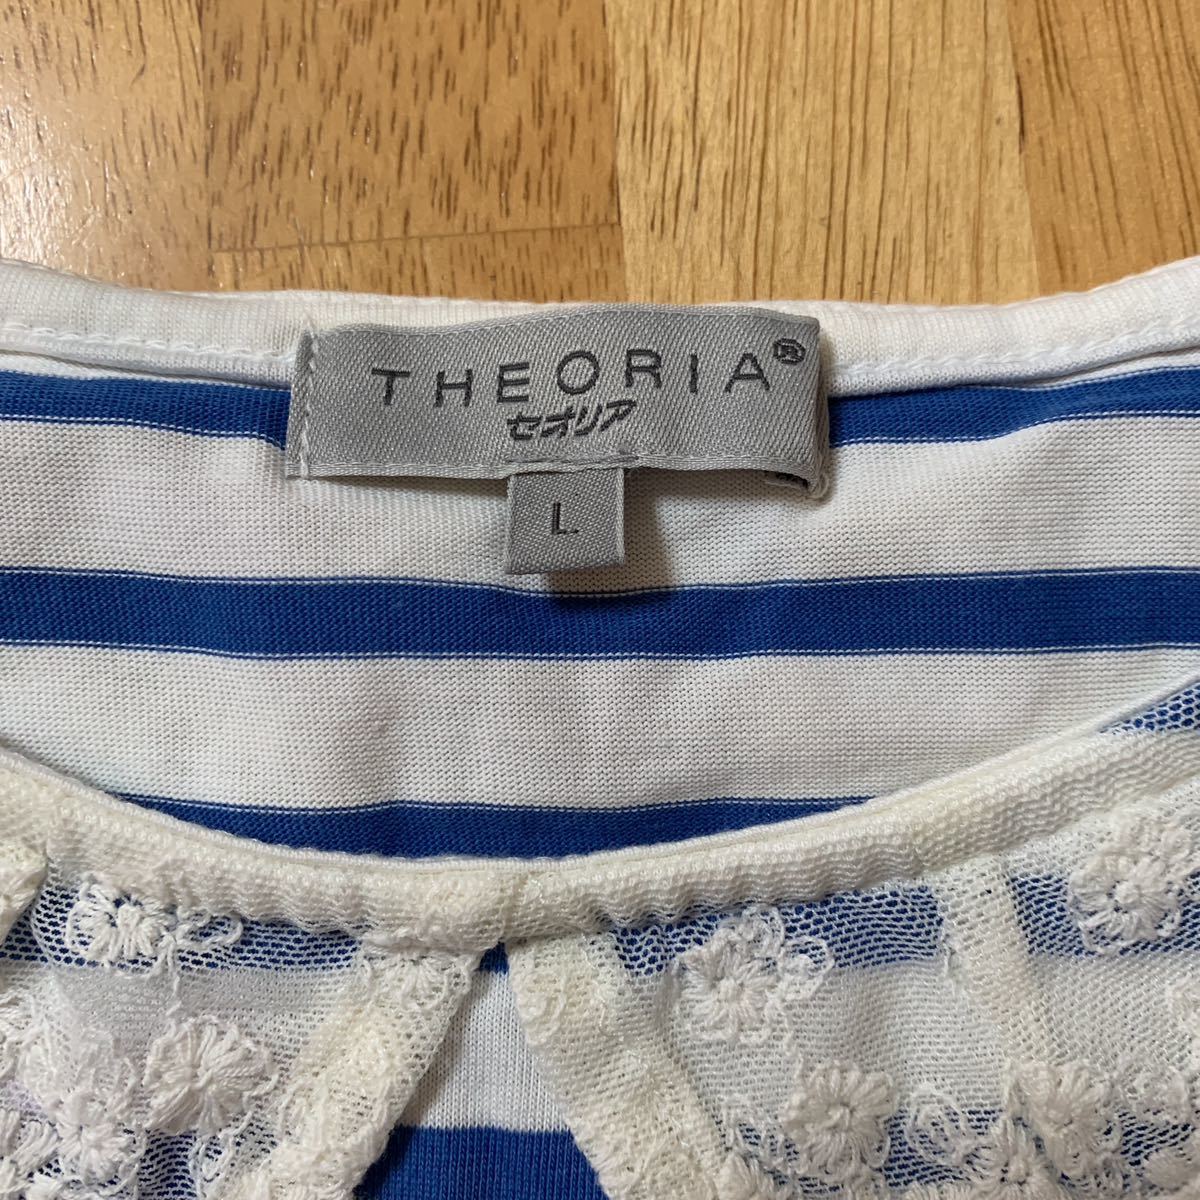 しまむら THEORIA セオリア レディース Tシャツ ボーダー青X白 WOMEN サイズ L バスト86-94 身長154-162 新品 未使用品 送料無料_画像4